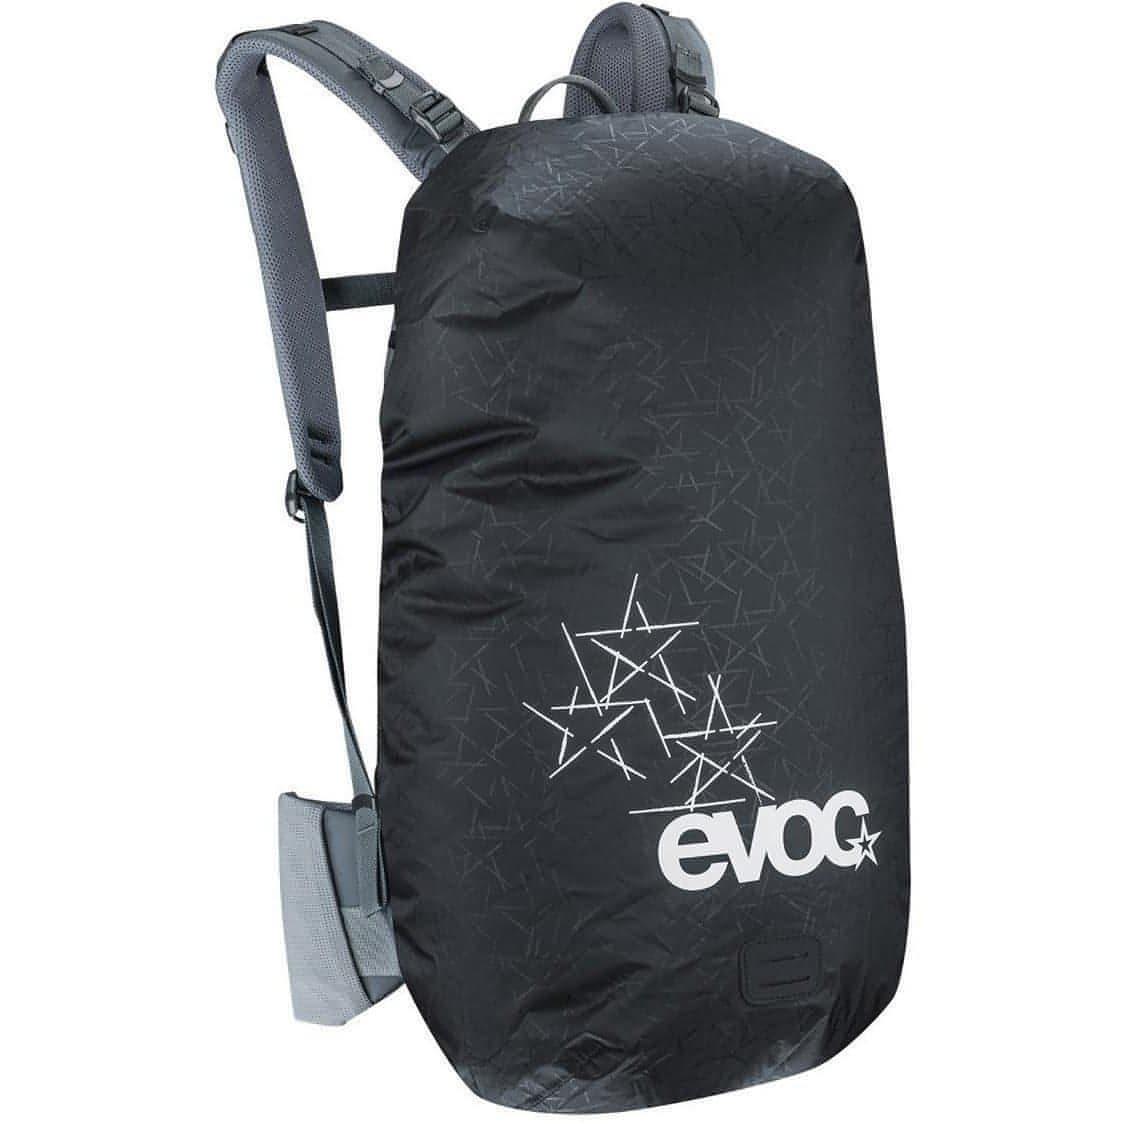 Evoc Backpack Large Raincover Sleeve - Black 4250450721154 - Start Fitness